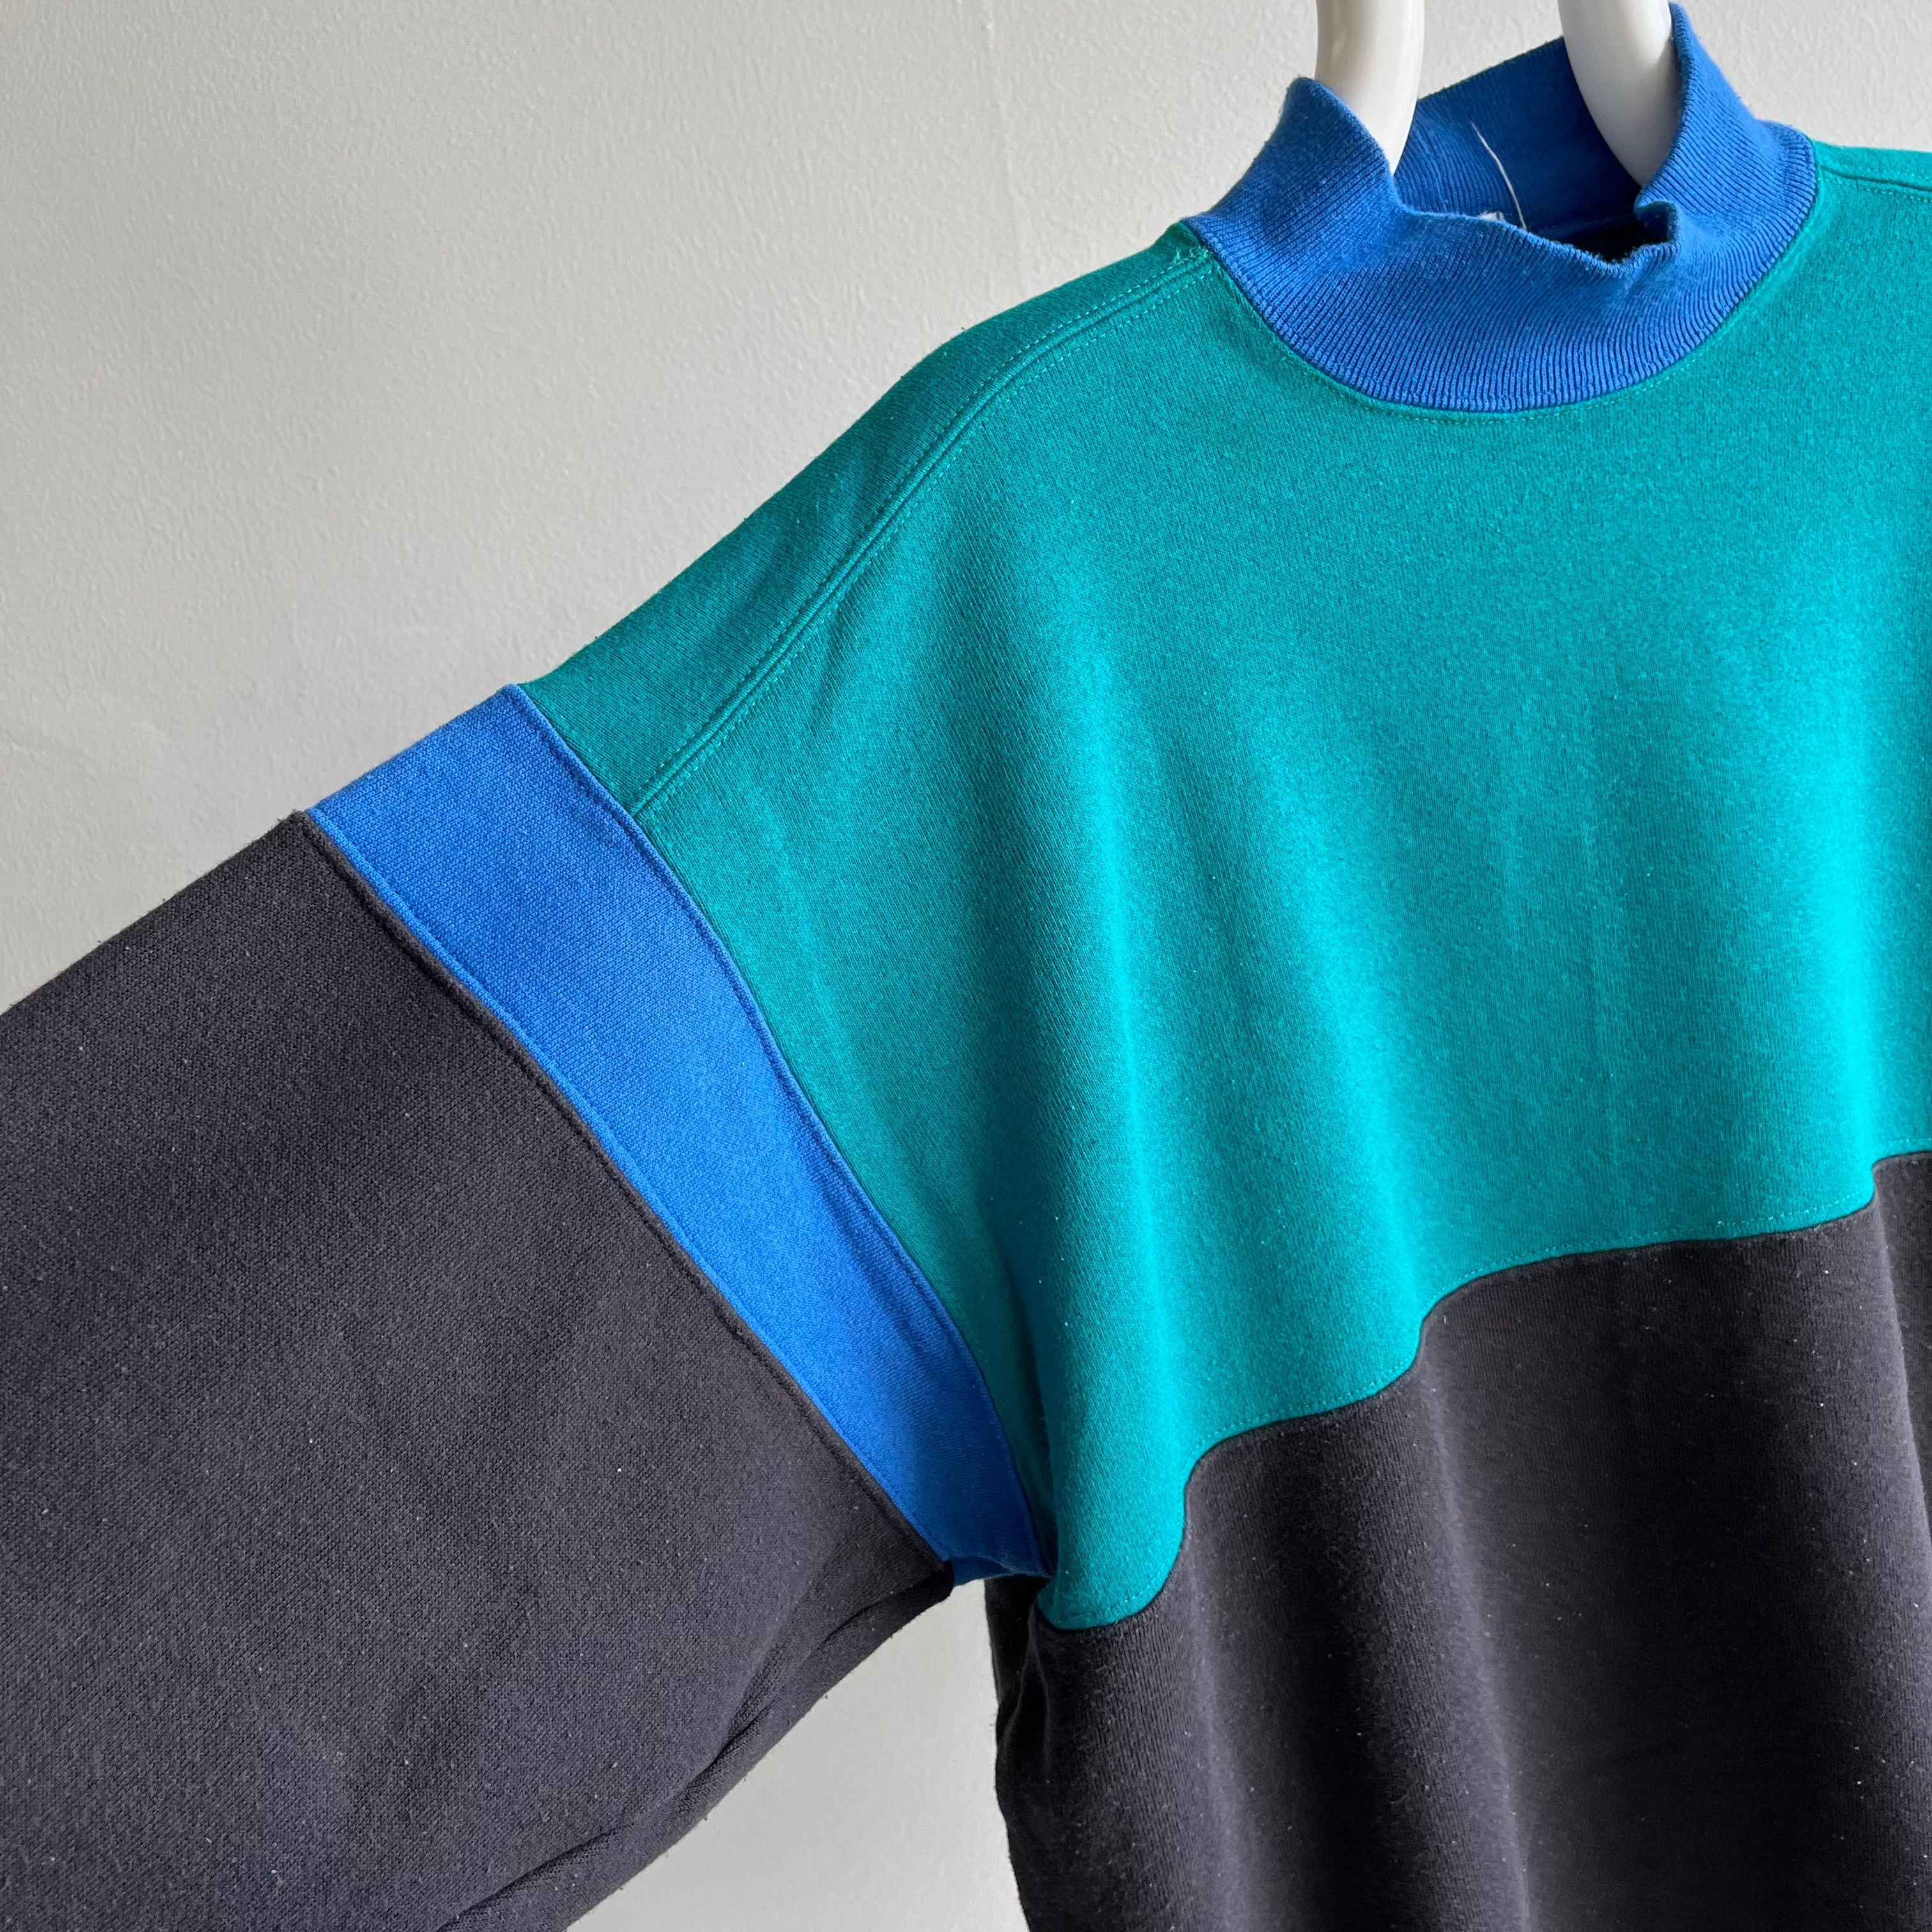 1990s Colorblock Sweatshirt by Hanes